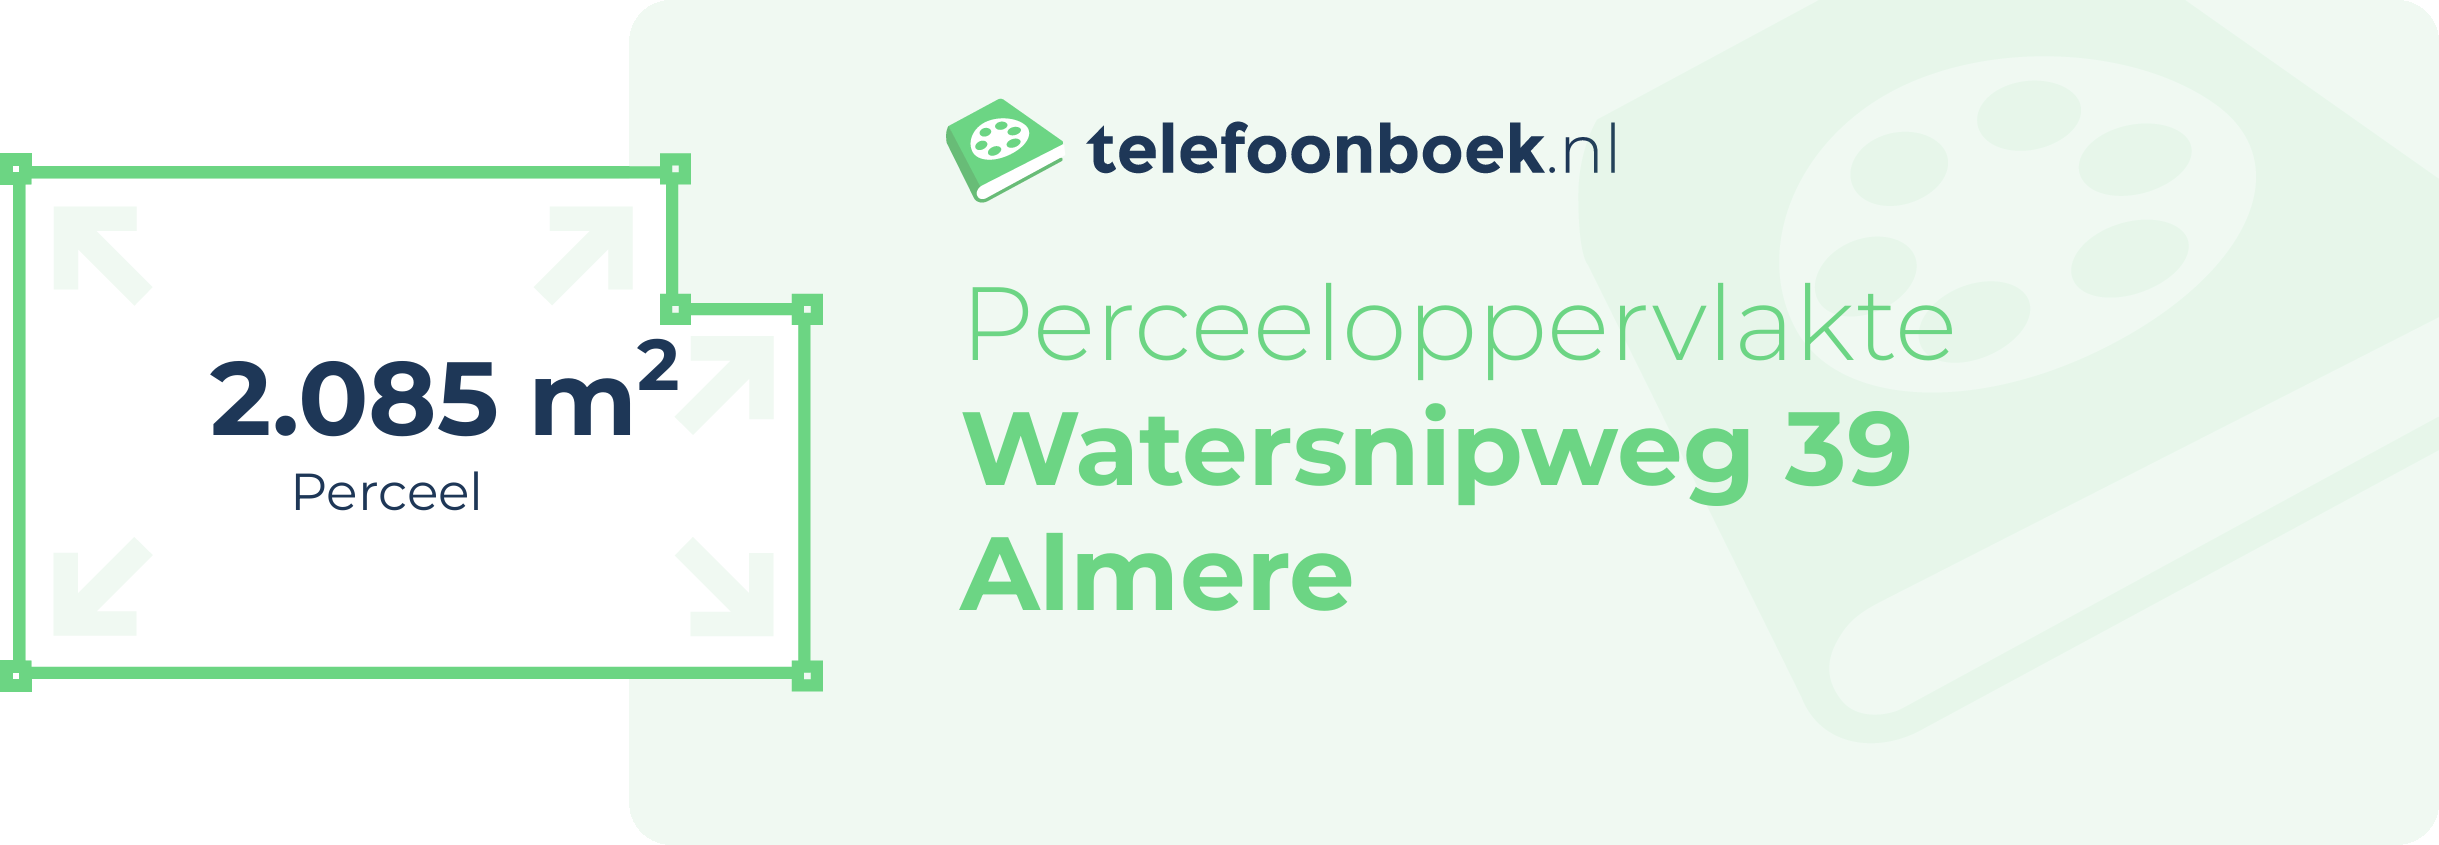 Perceeloppervlakte Watersnipweg 39 Almere